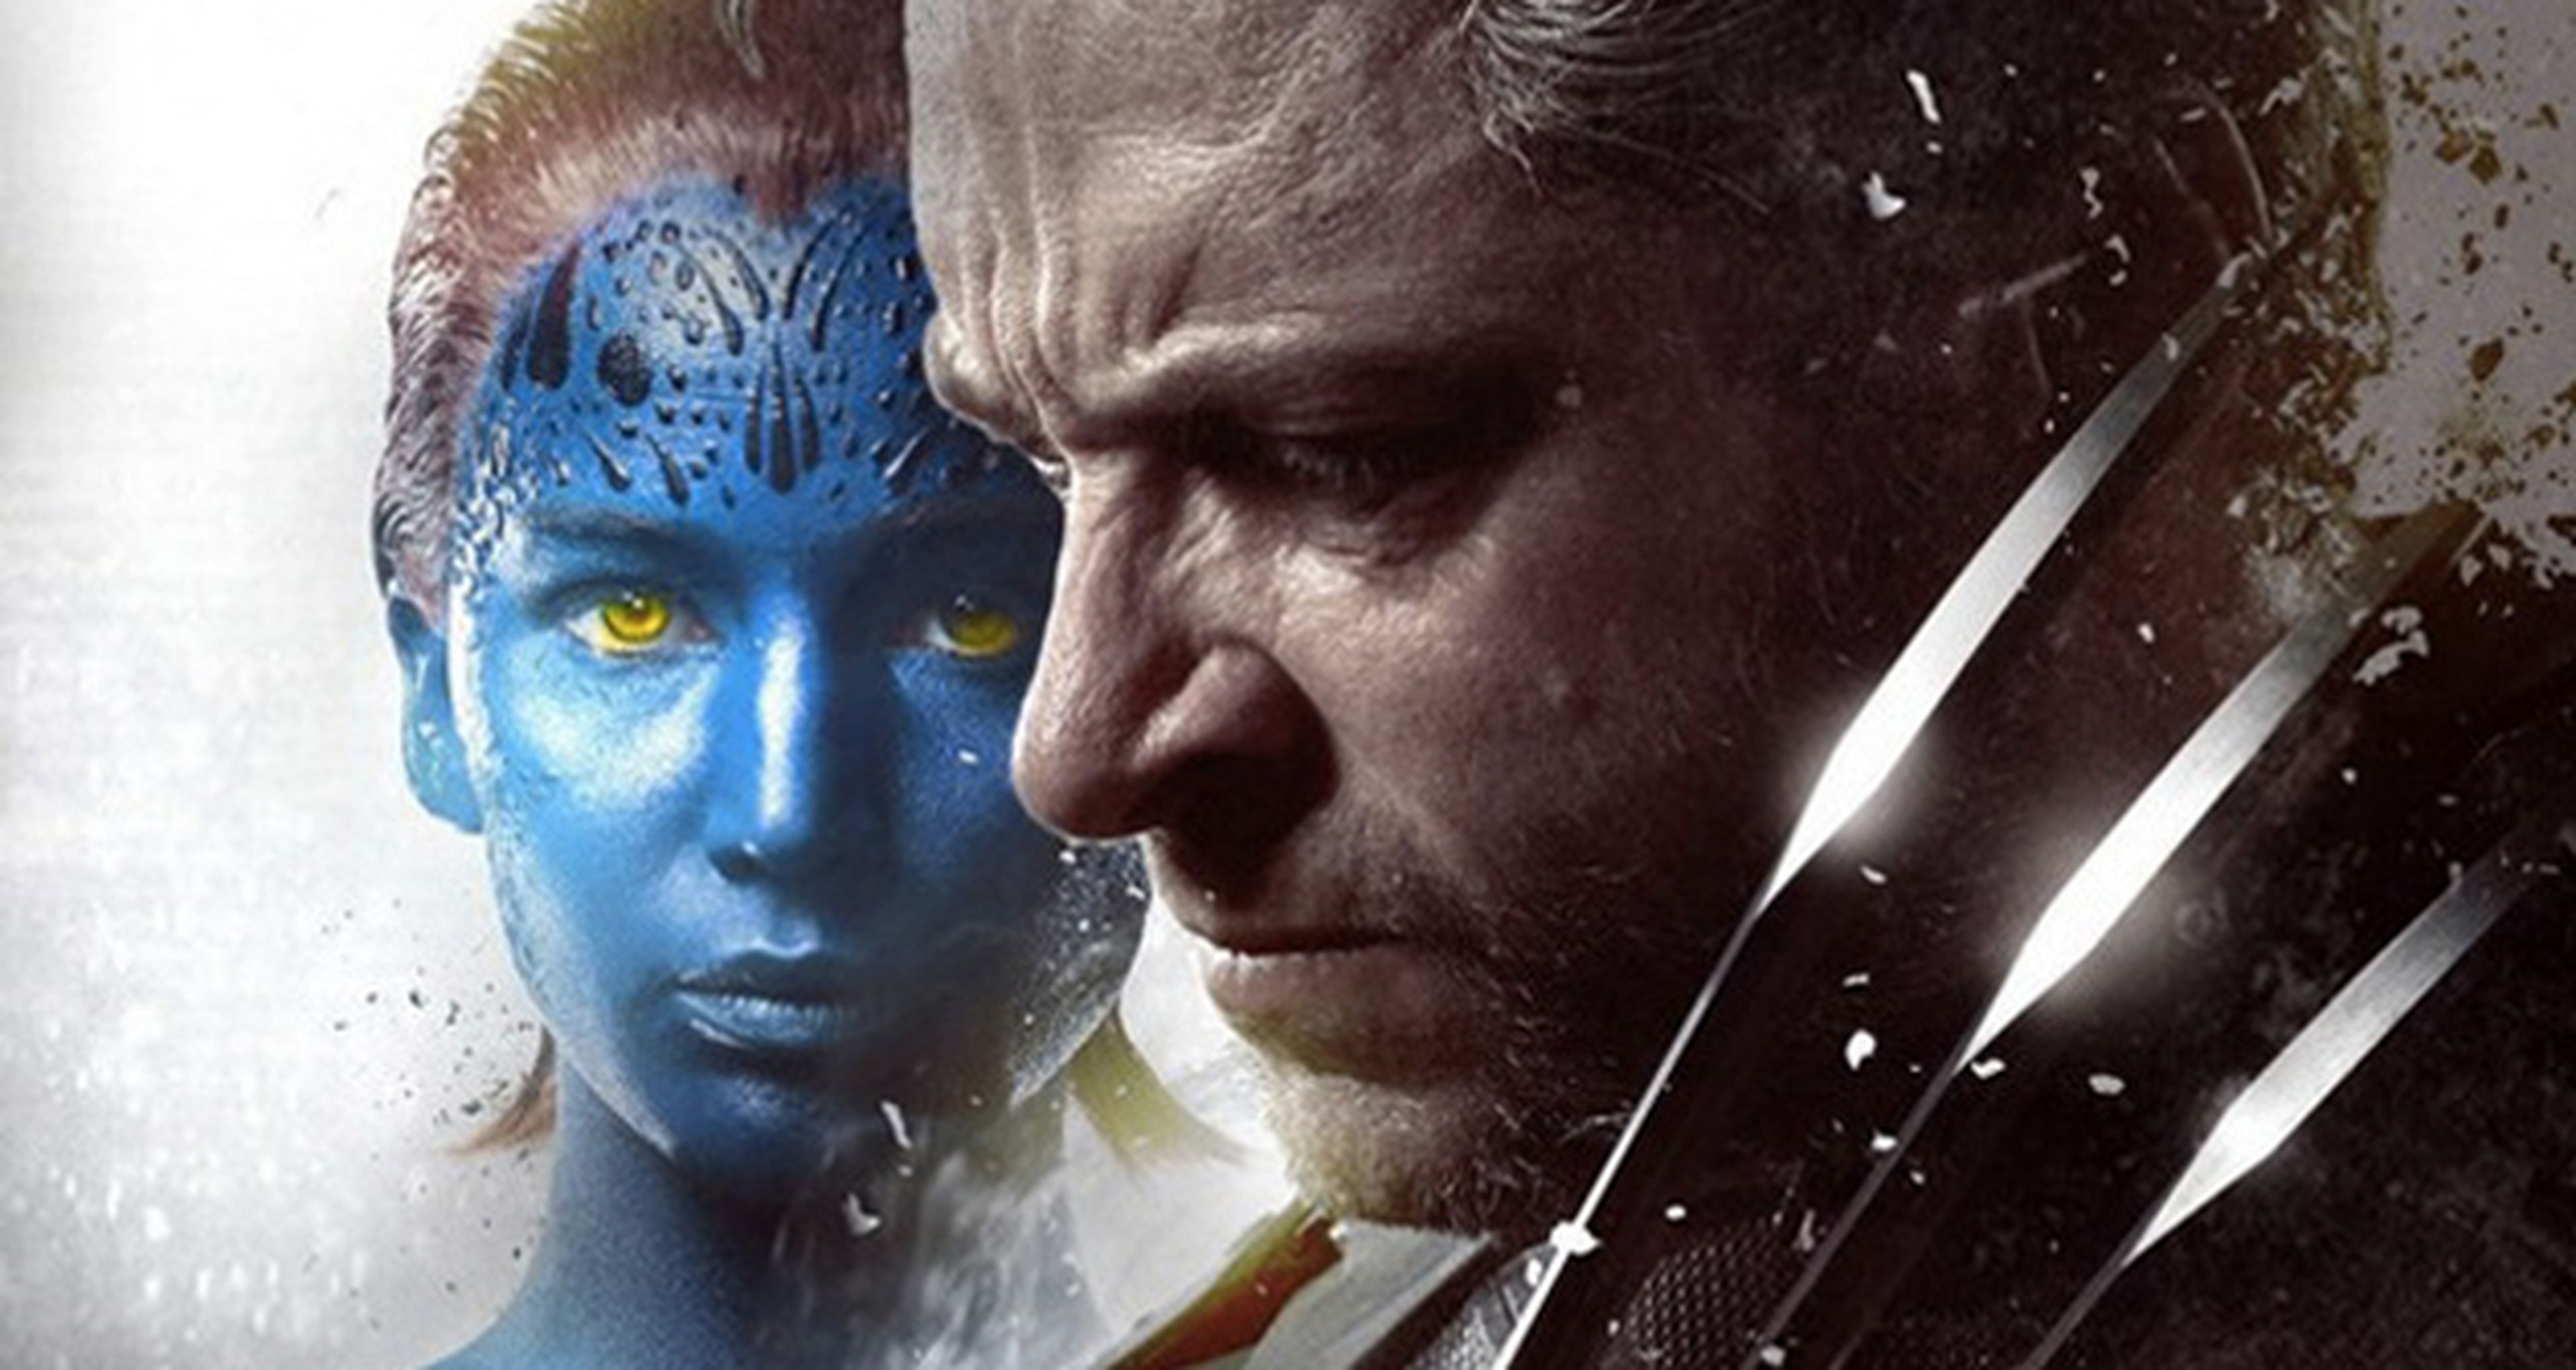 Novedades sobre X-Men: Apocalypse. ¿Es seguro el futuro?